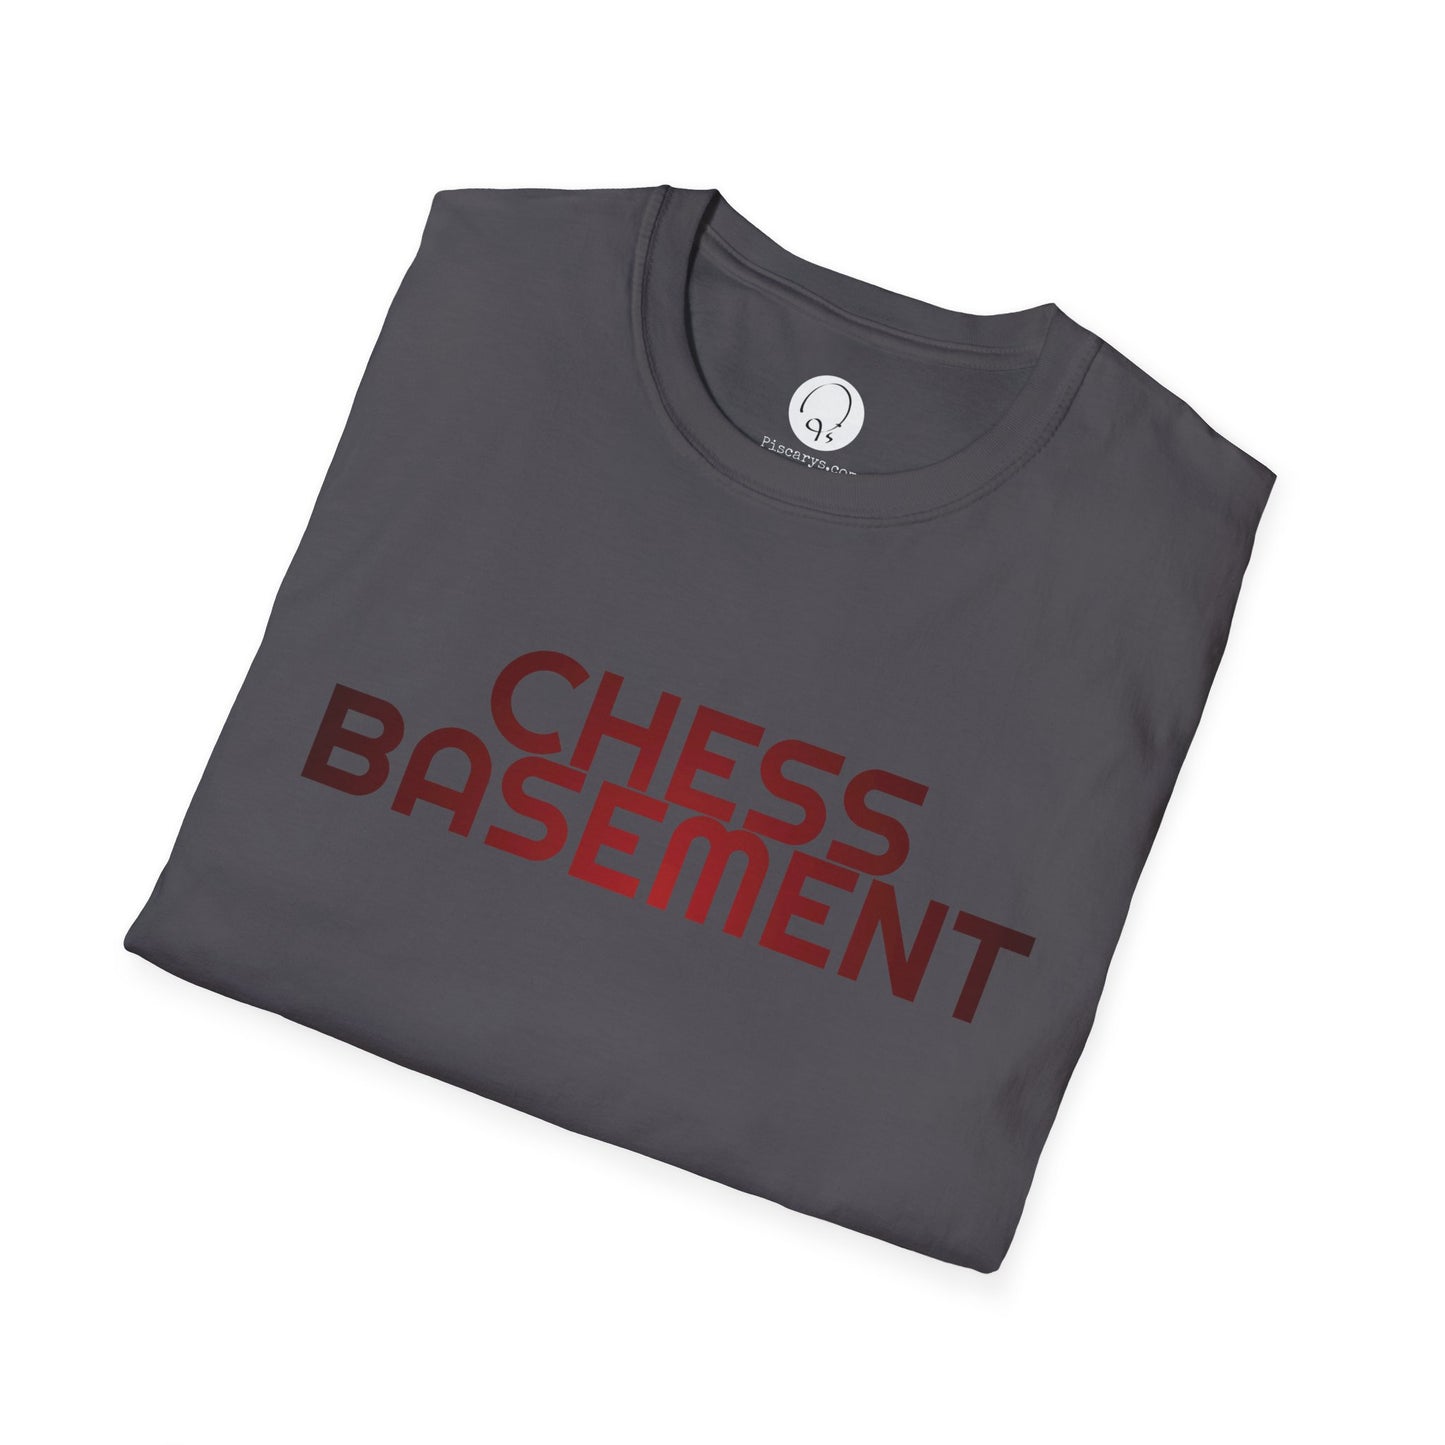 Chess Basement Shirt